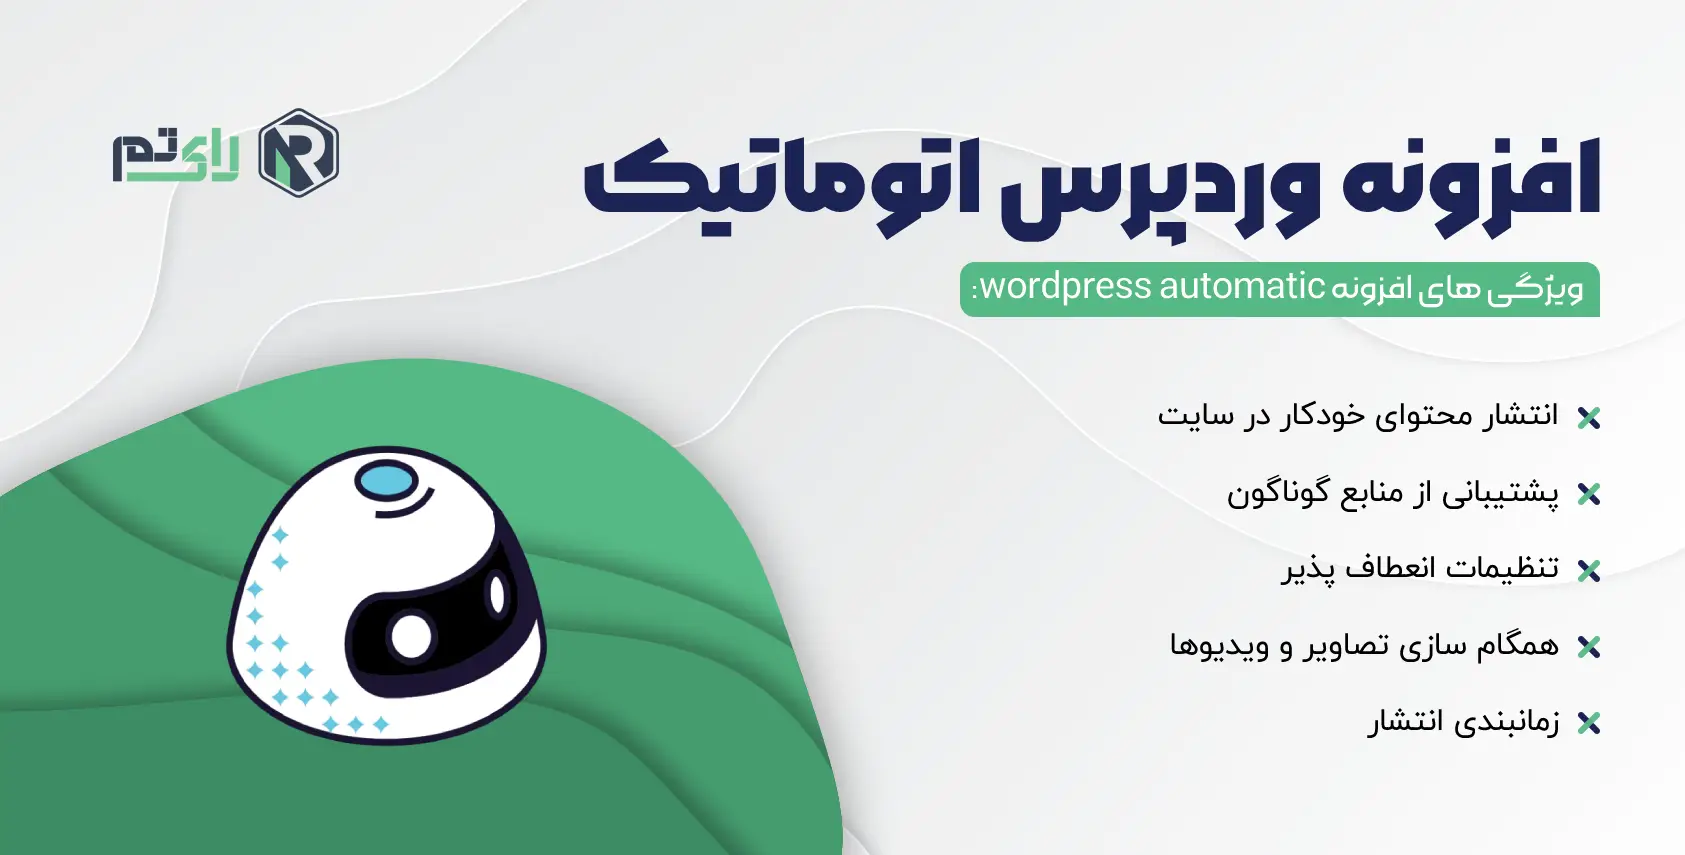 افزونه وردپرس اتوماتیک | wordpress automatic